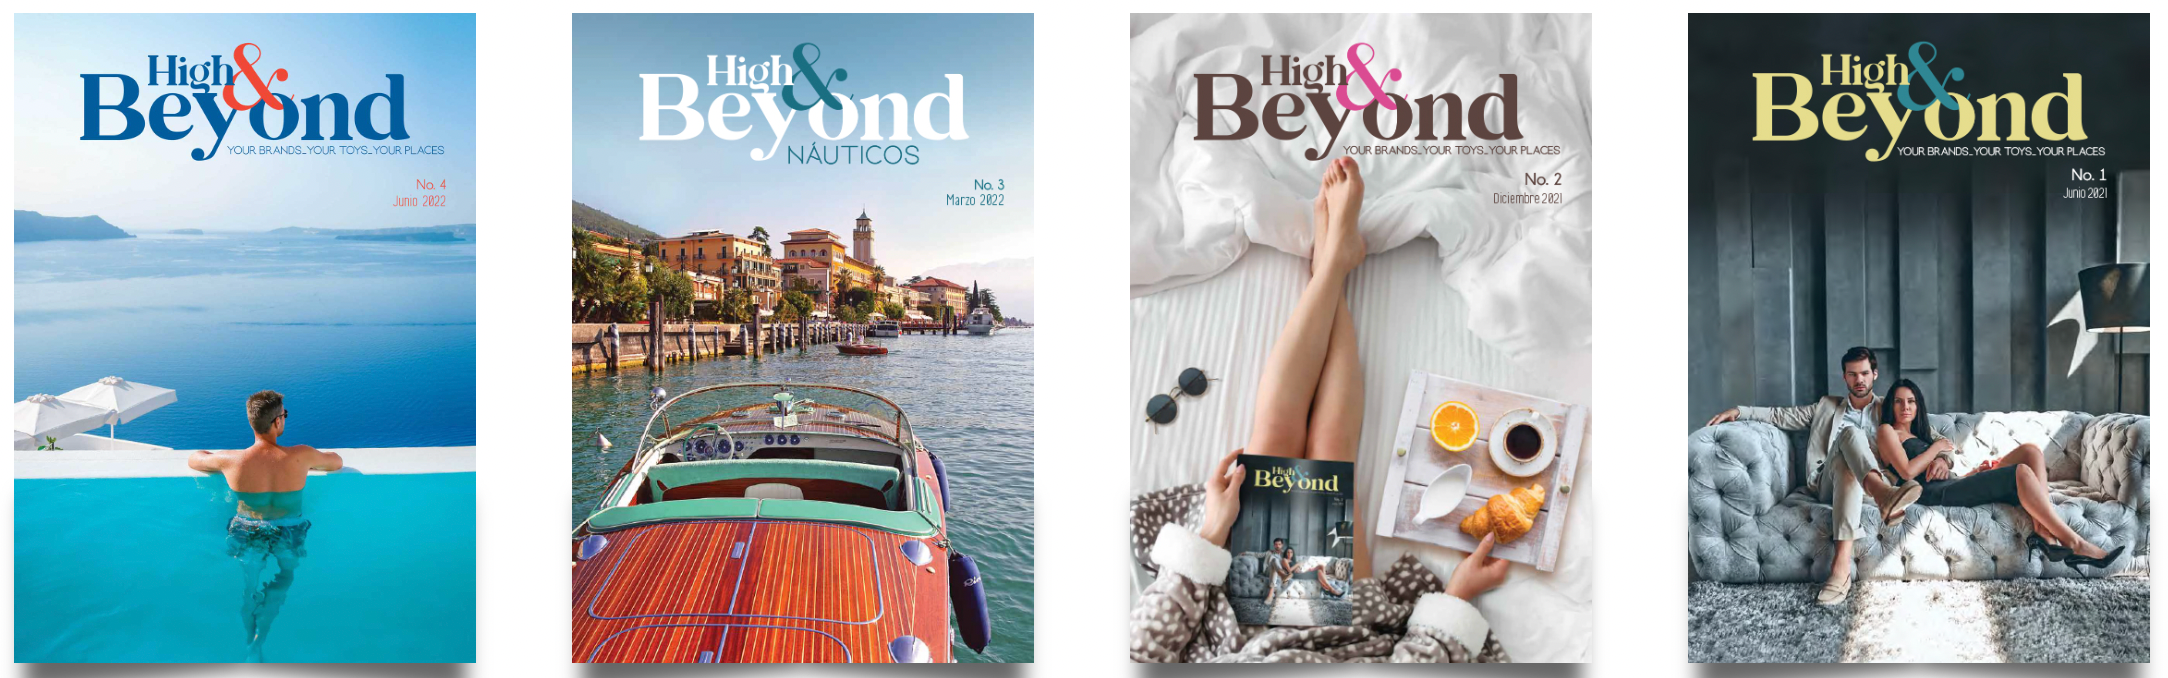 Revista High&Beyond